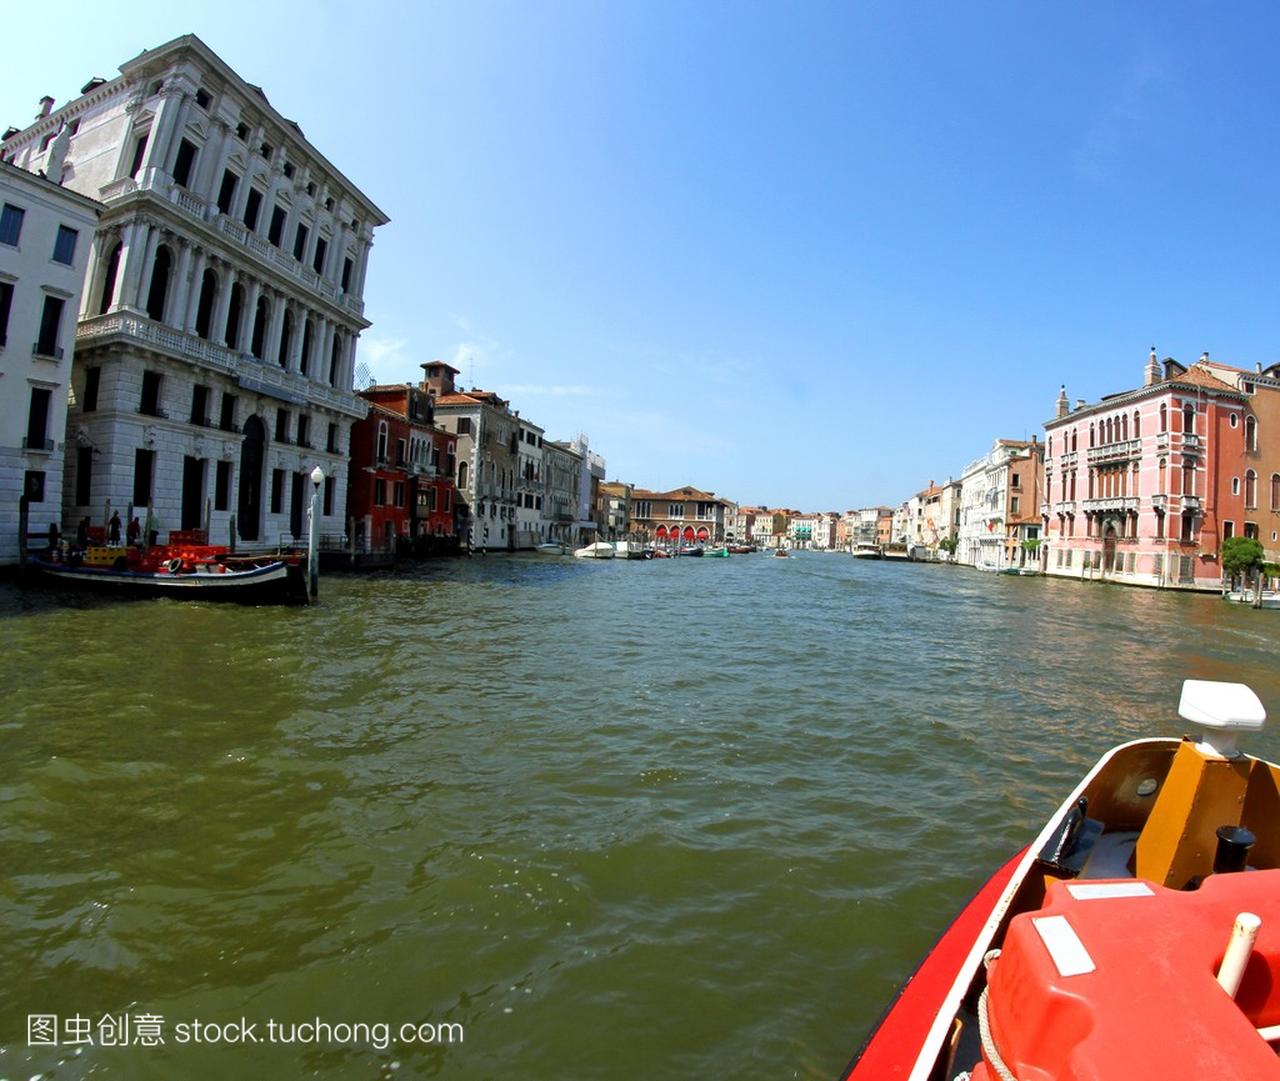 威尼斯共和国在京杭大运河上的著名宫殿